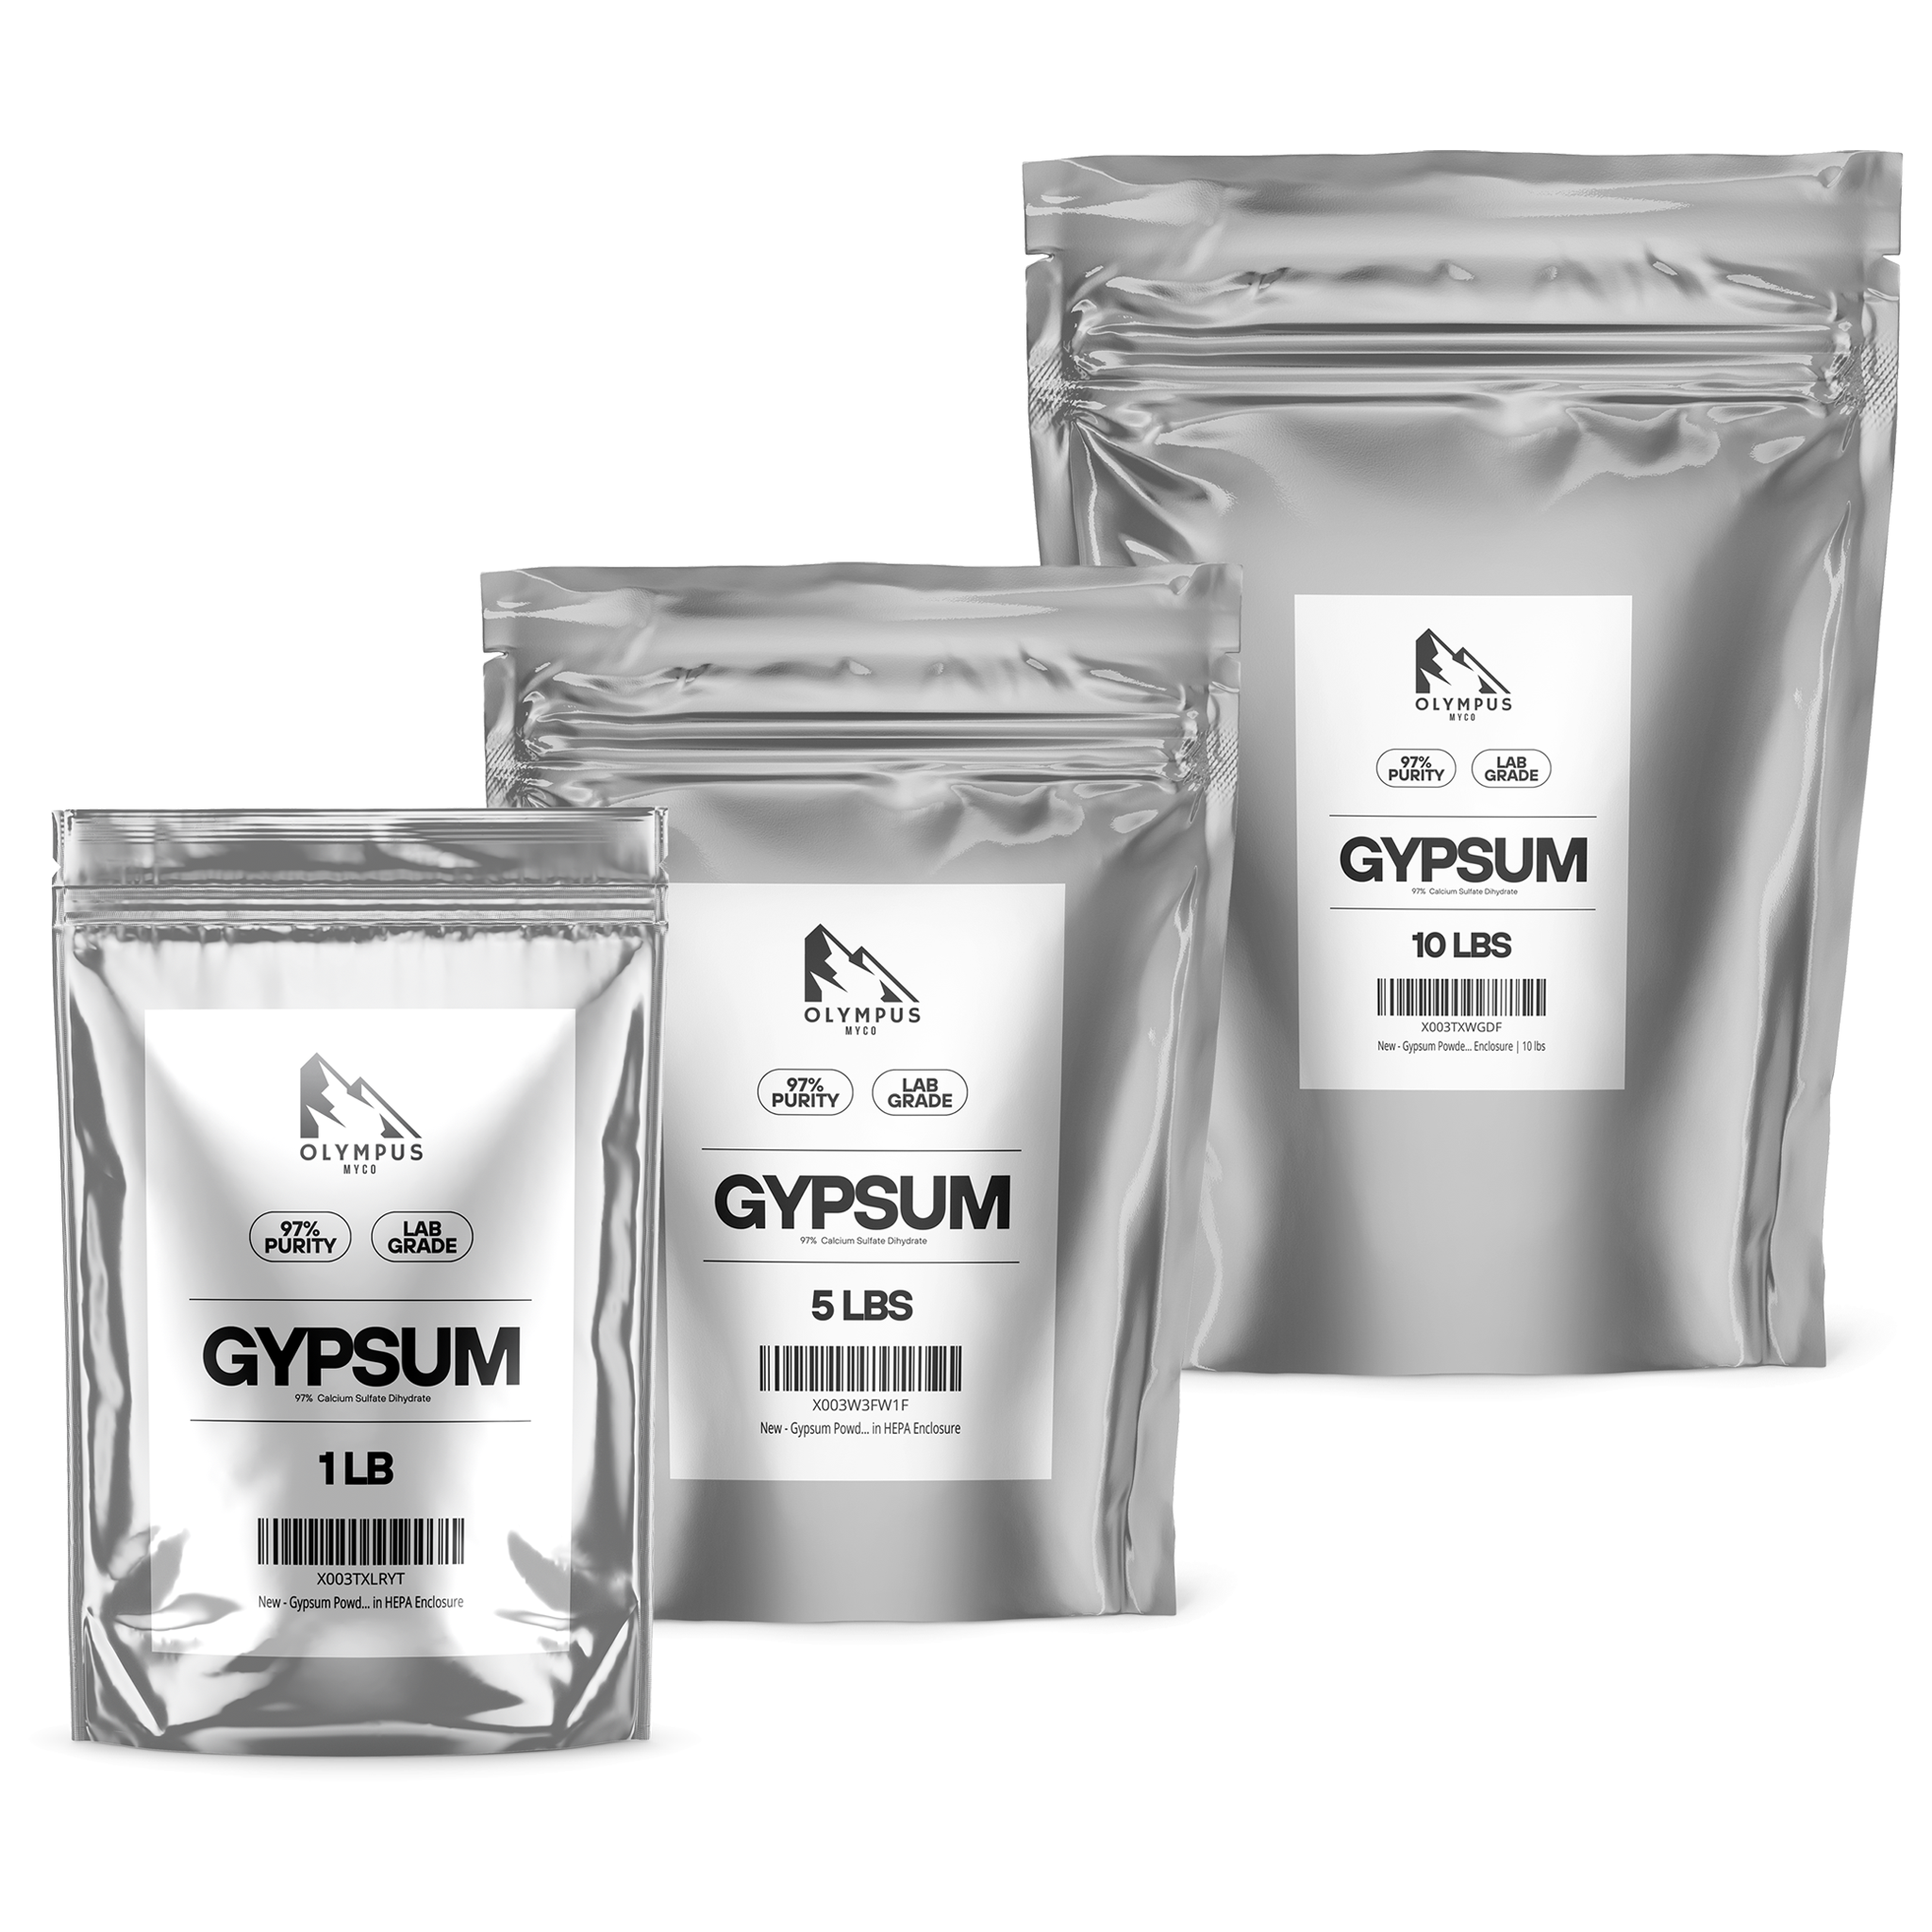 Olympus Myco gypsum powder for mushroom substrate